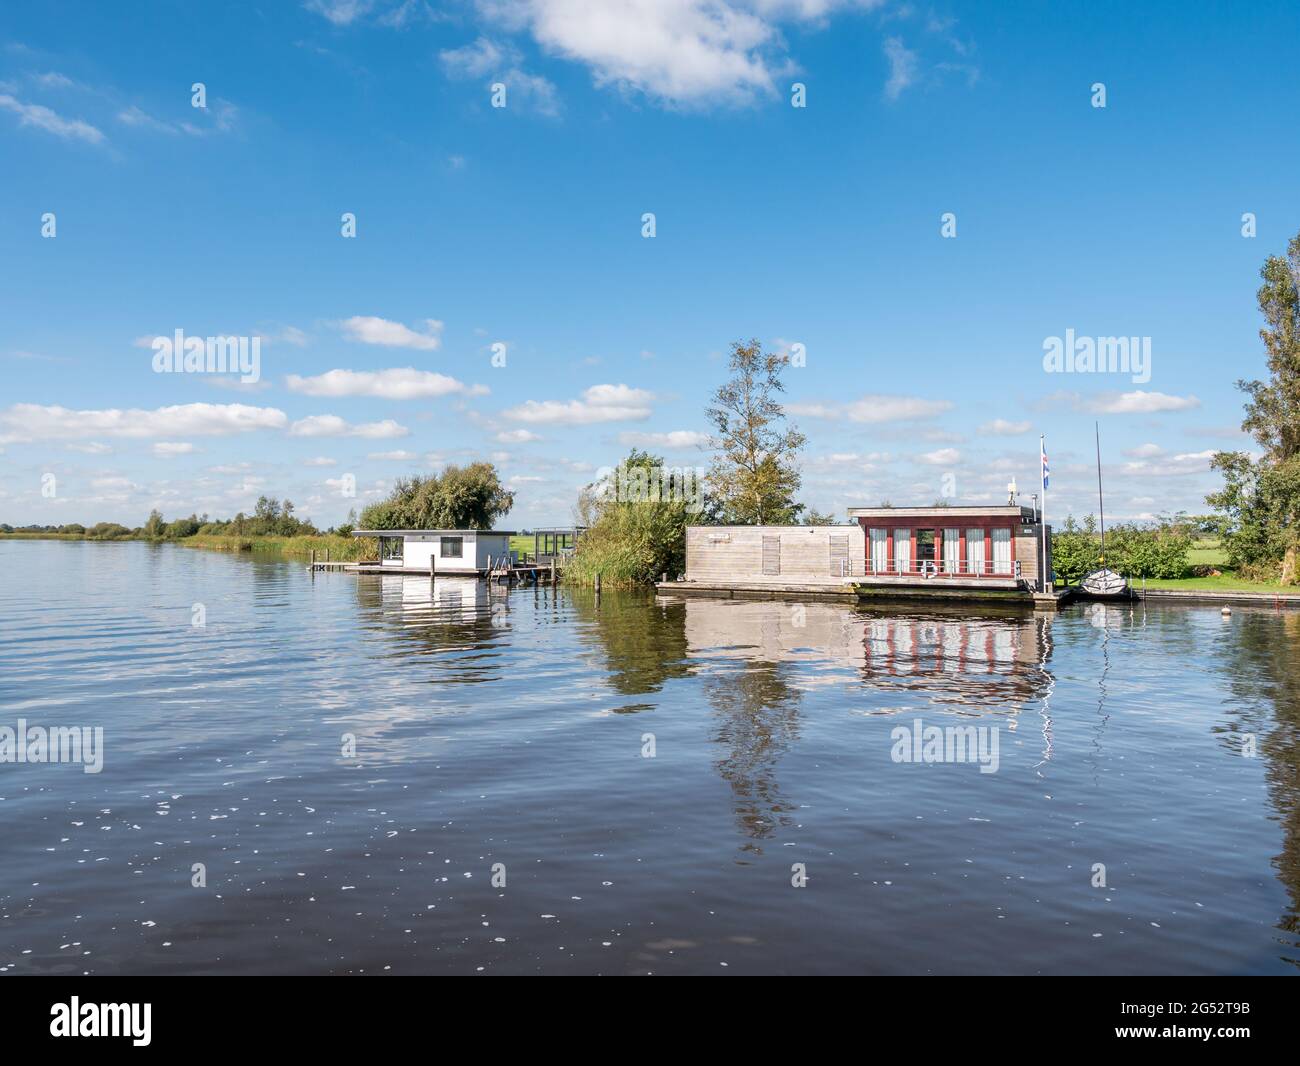 Houseboats en el canal de todo el IE en la reserva natural Alde Feanen, Friesland, Países Bajos Foto de stock